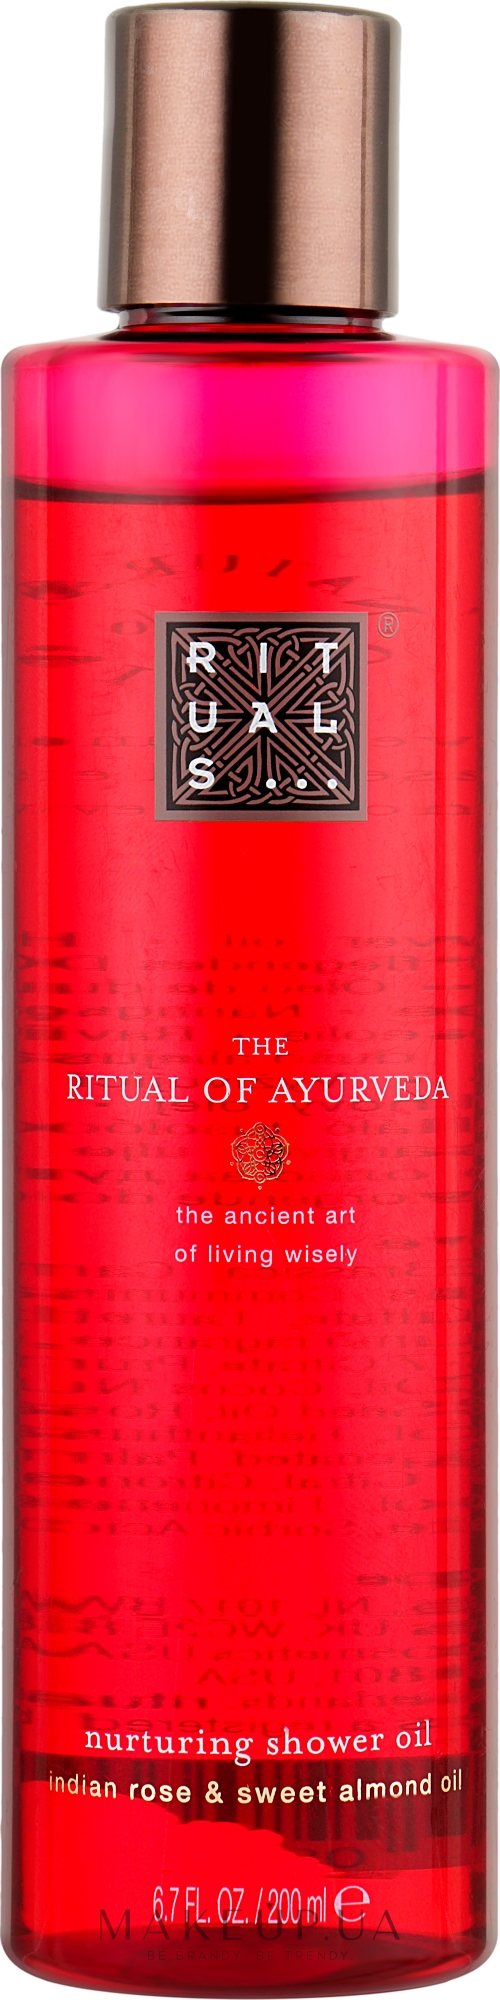 Олія для душу з ароматом індійської троянди і солодкого мигдалю - Rituals The Ritual of Ayurveda Nurturing Shower Oil — фото 200ml